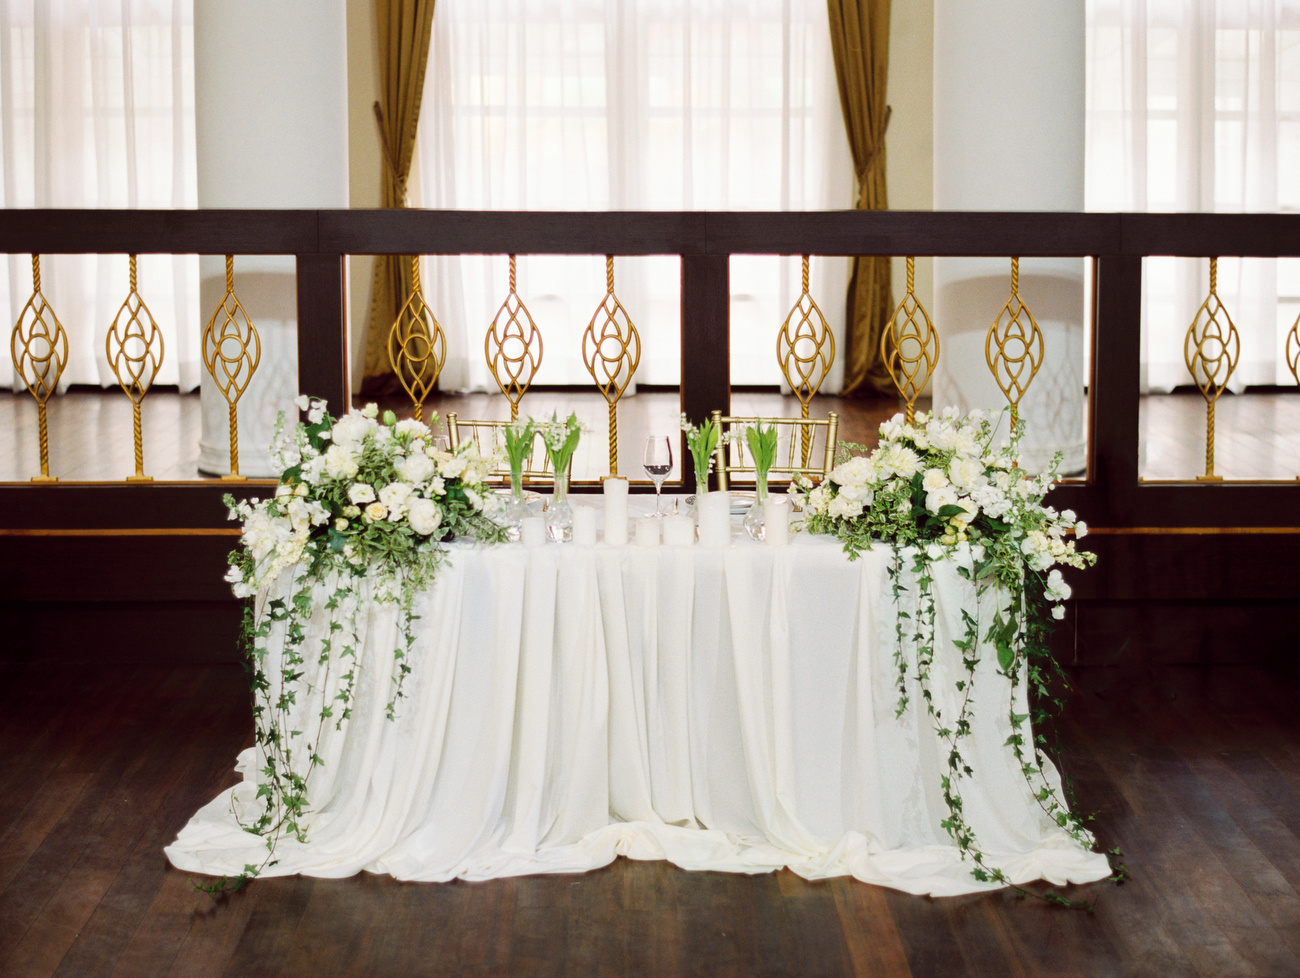 Свадебное украшение столов